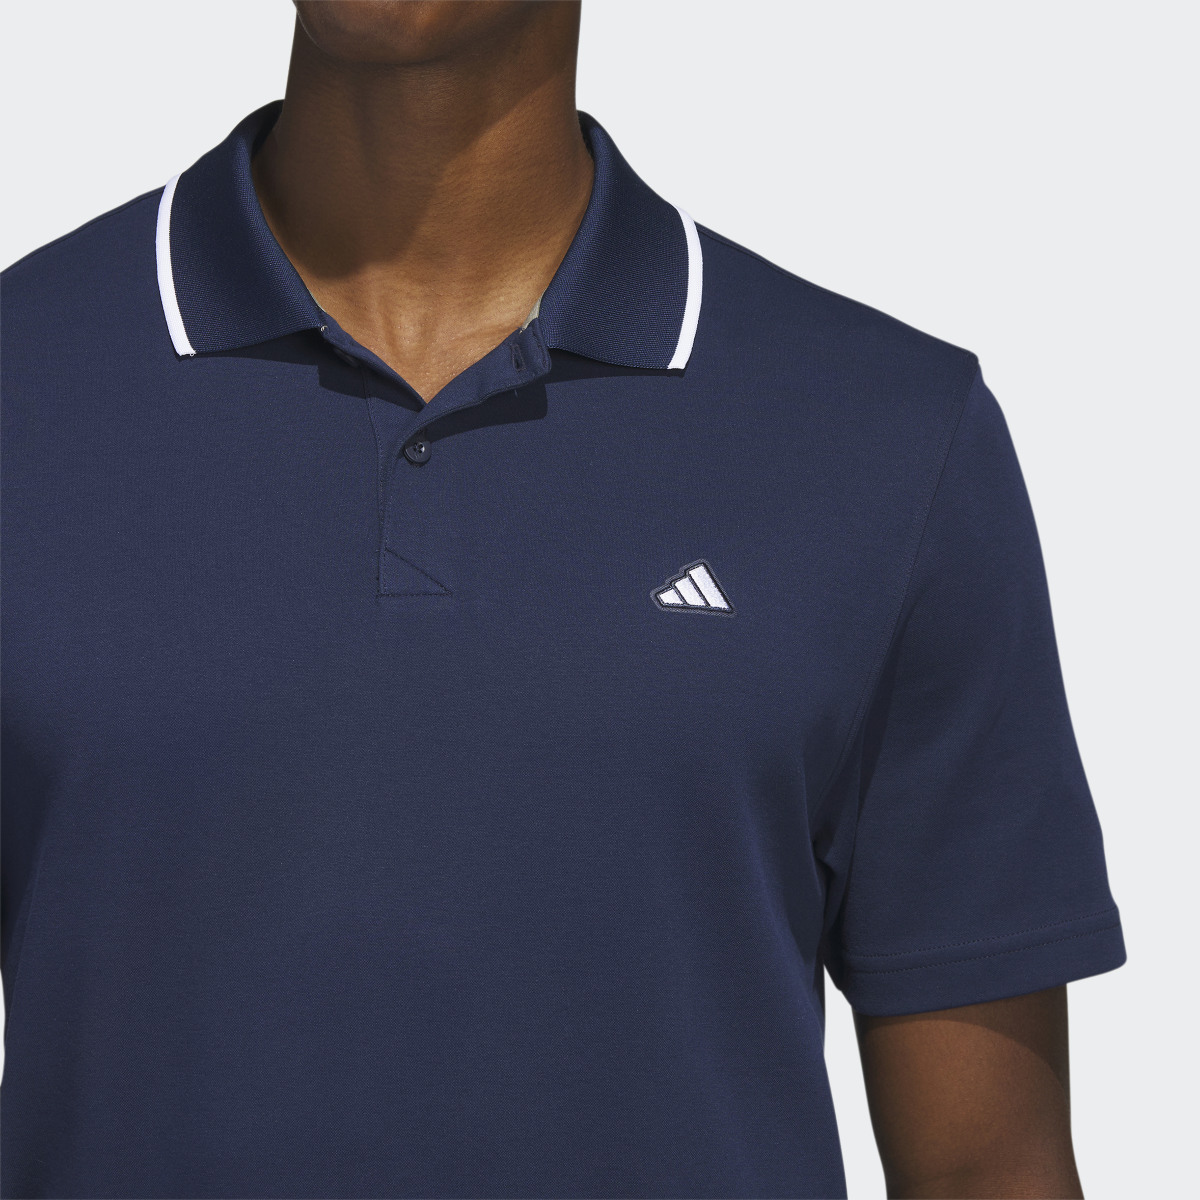 Adidas Go-To Piqué Golf Polo Shirt. 7